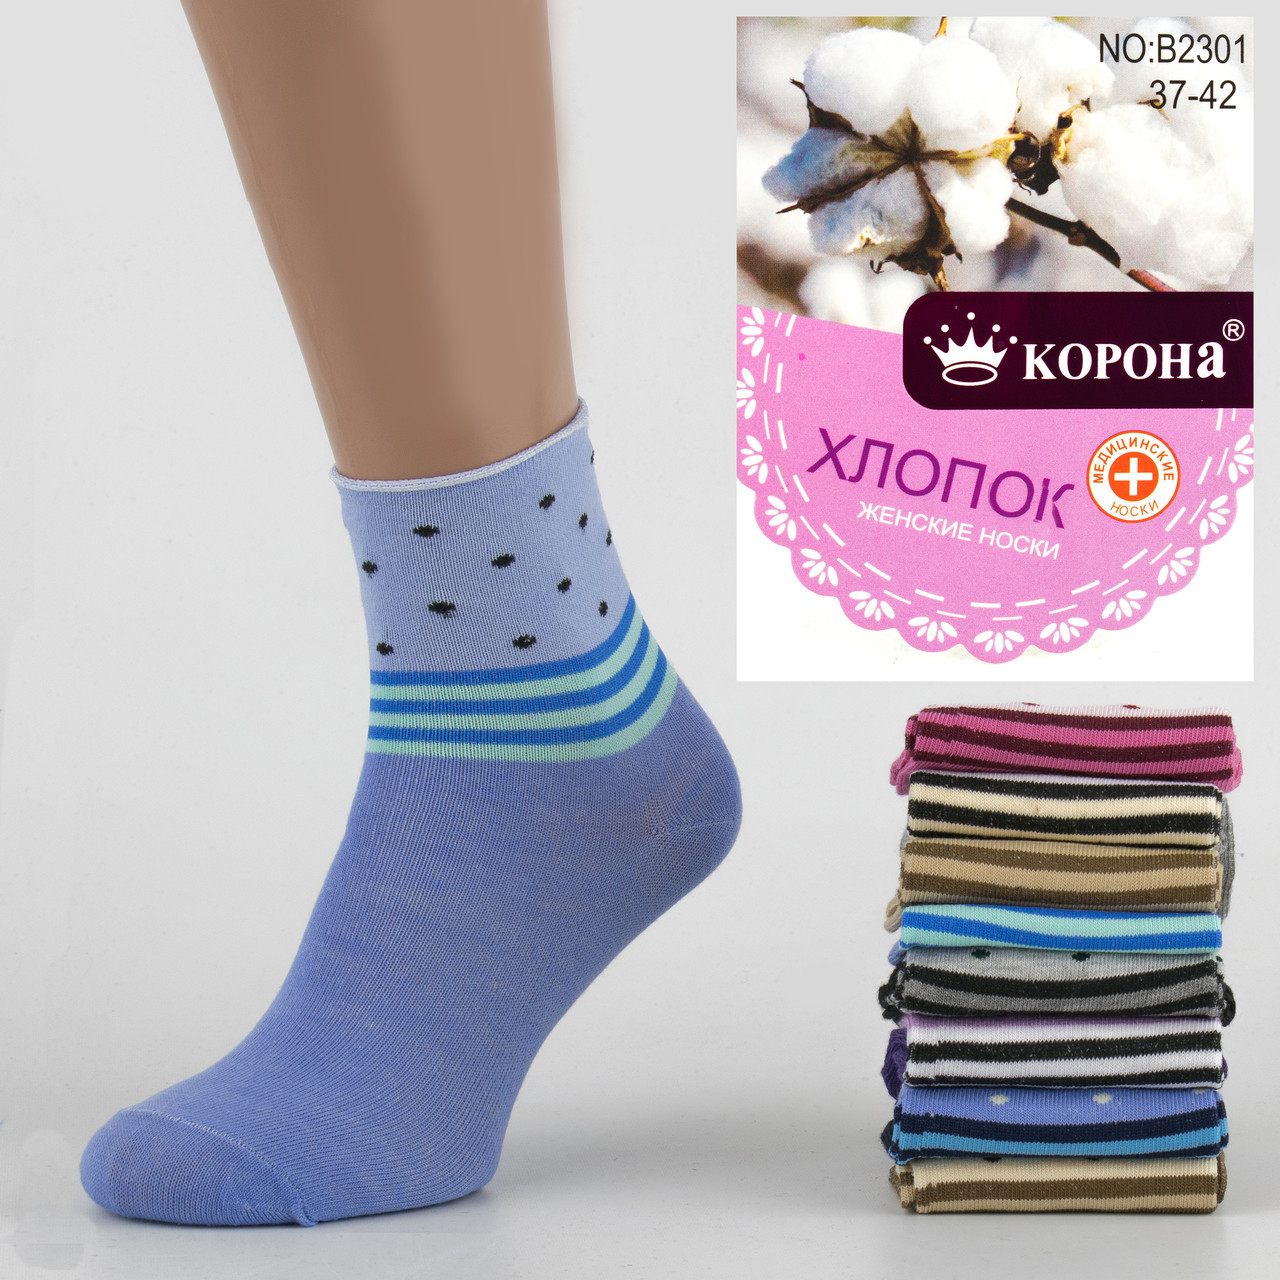 Жіночі шкарпетки Без Гумки (медичні), р. 37-42.